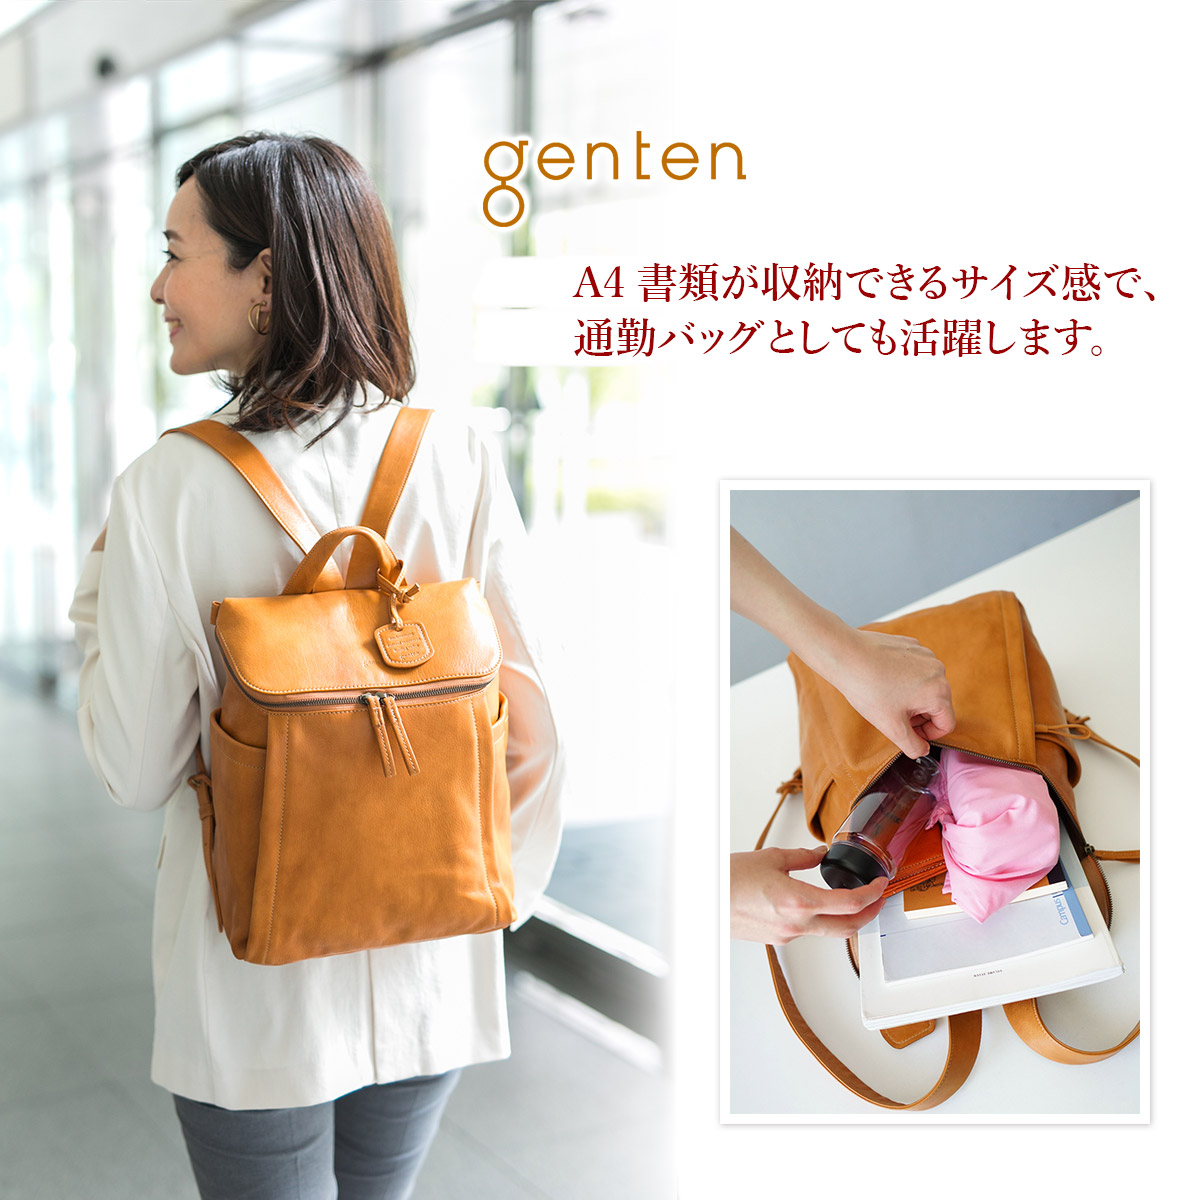 Genten ゲンテン バッグGOAT 大容量 日本製 デイパック バックパック